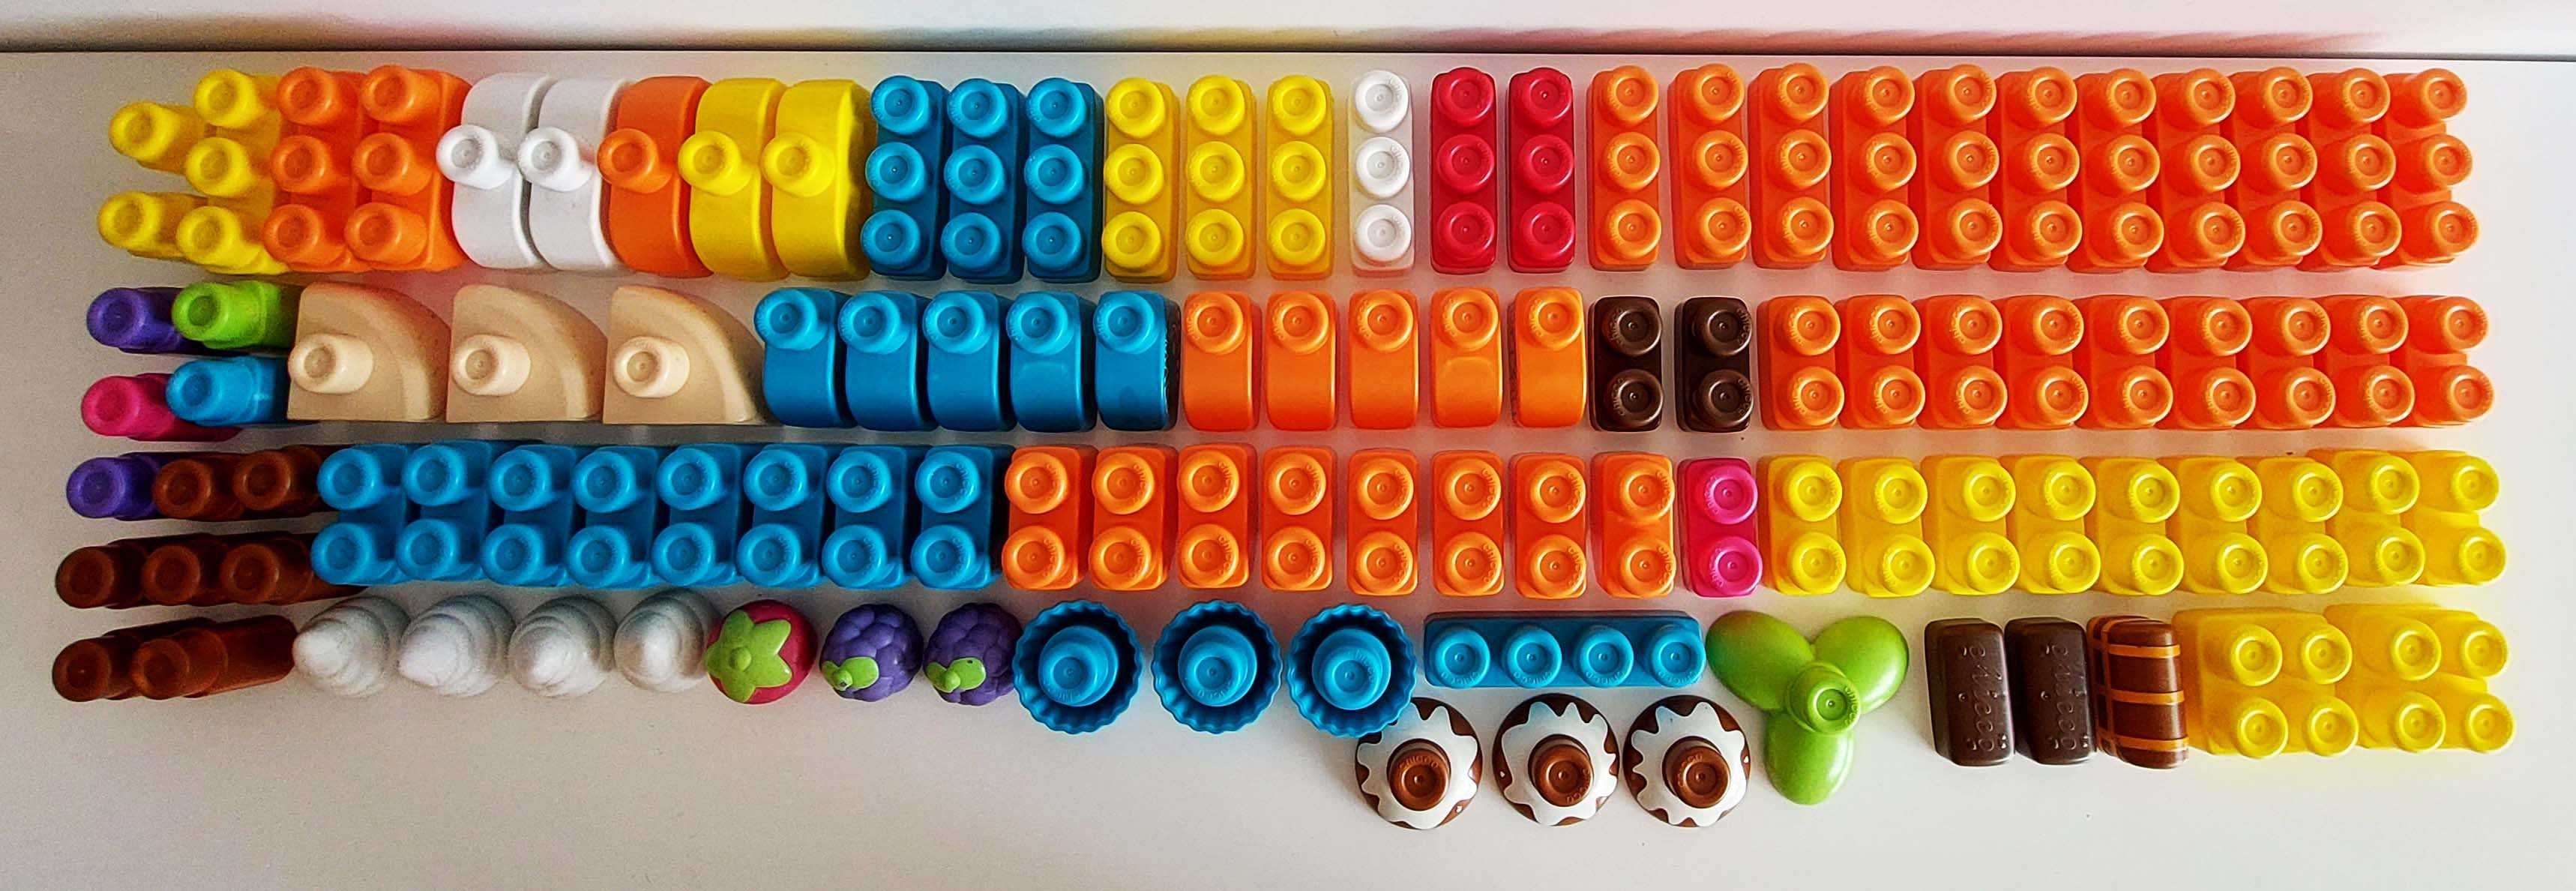 Conjunto de Legos blocos de construção da Chicco com 115 peças